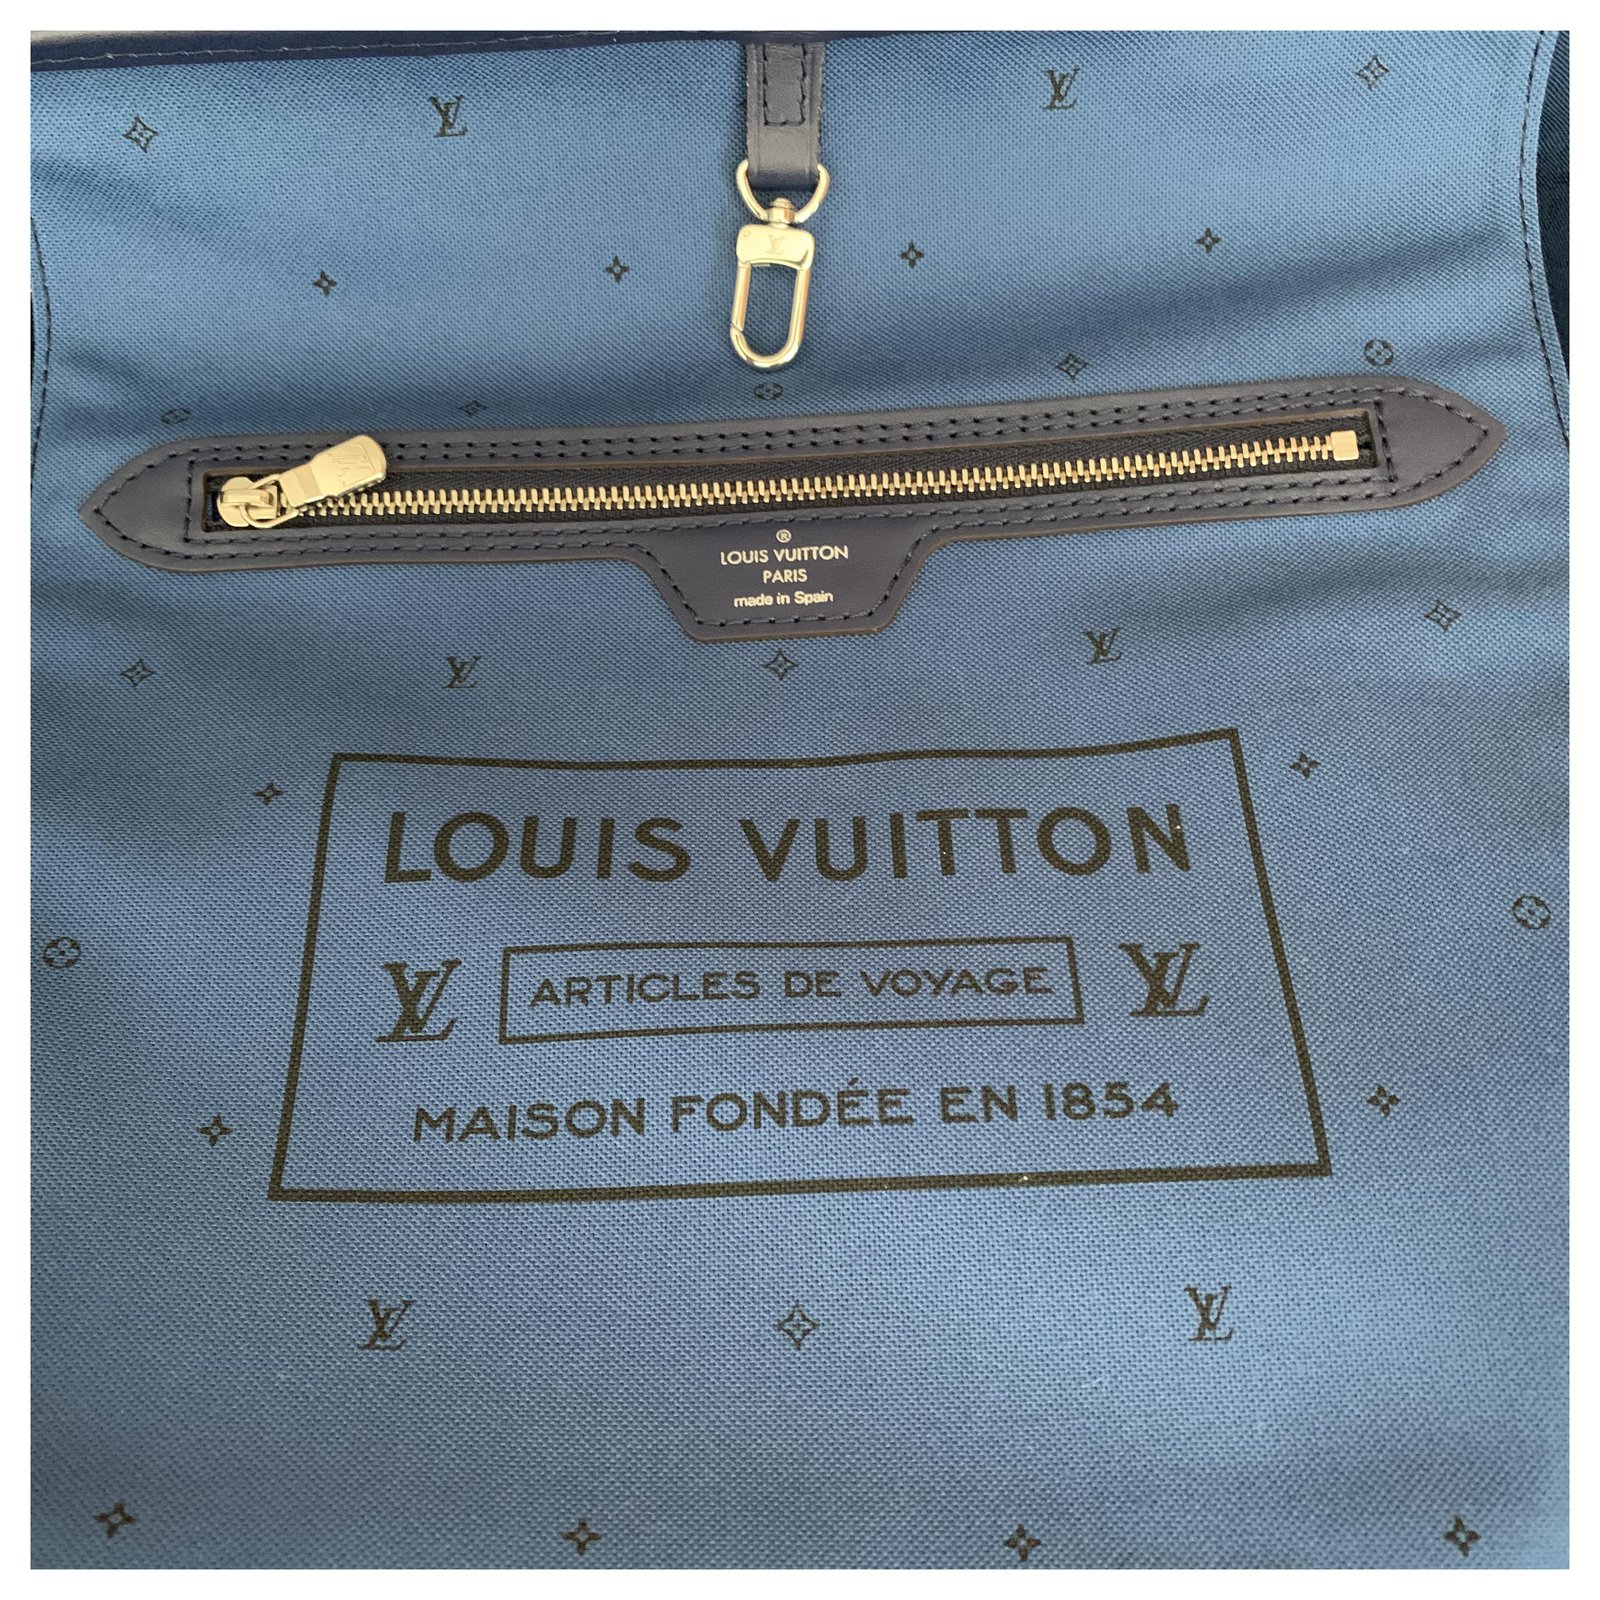 VERKAUFT - Louis Vuitton Neverfull MM Escale Blau Tasche * wie NEU